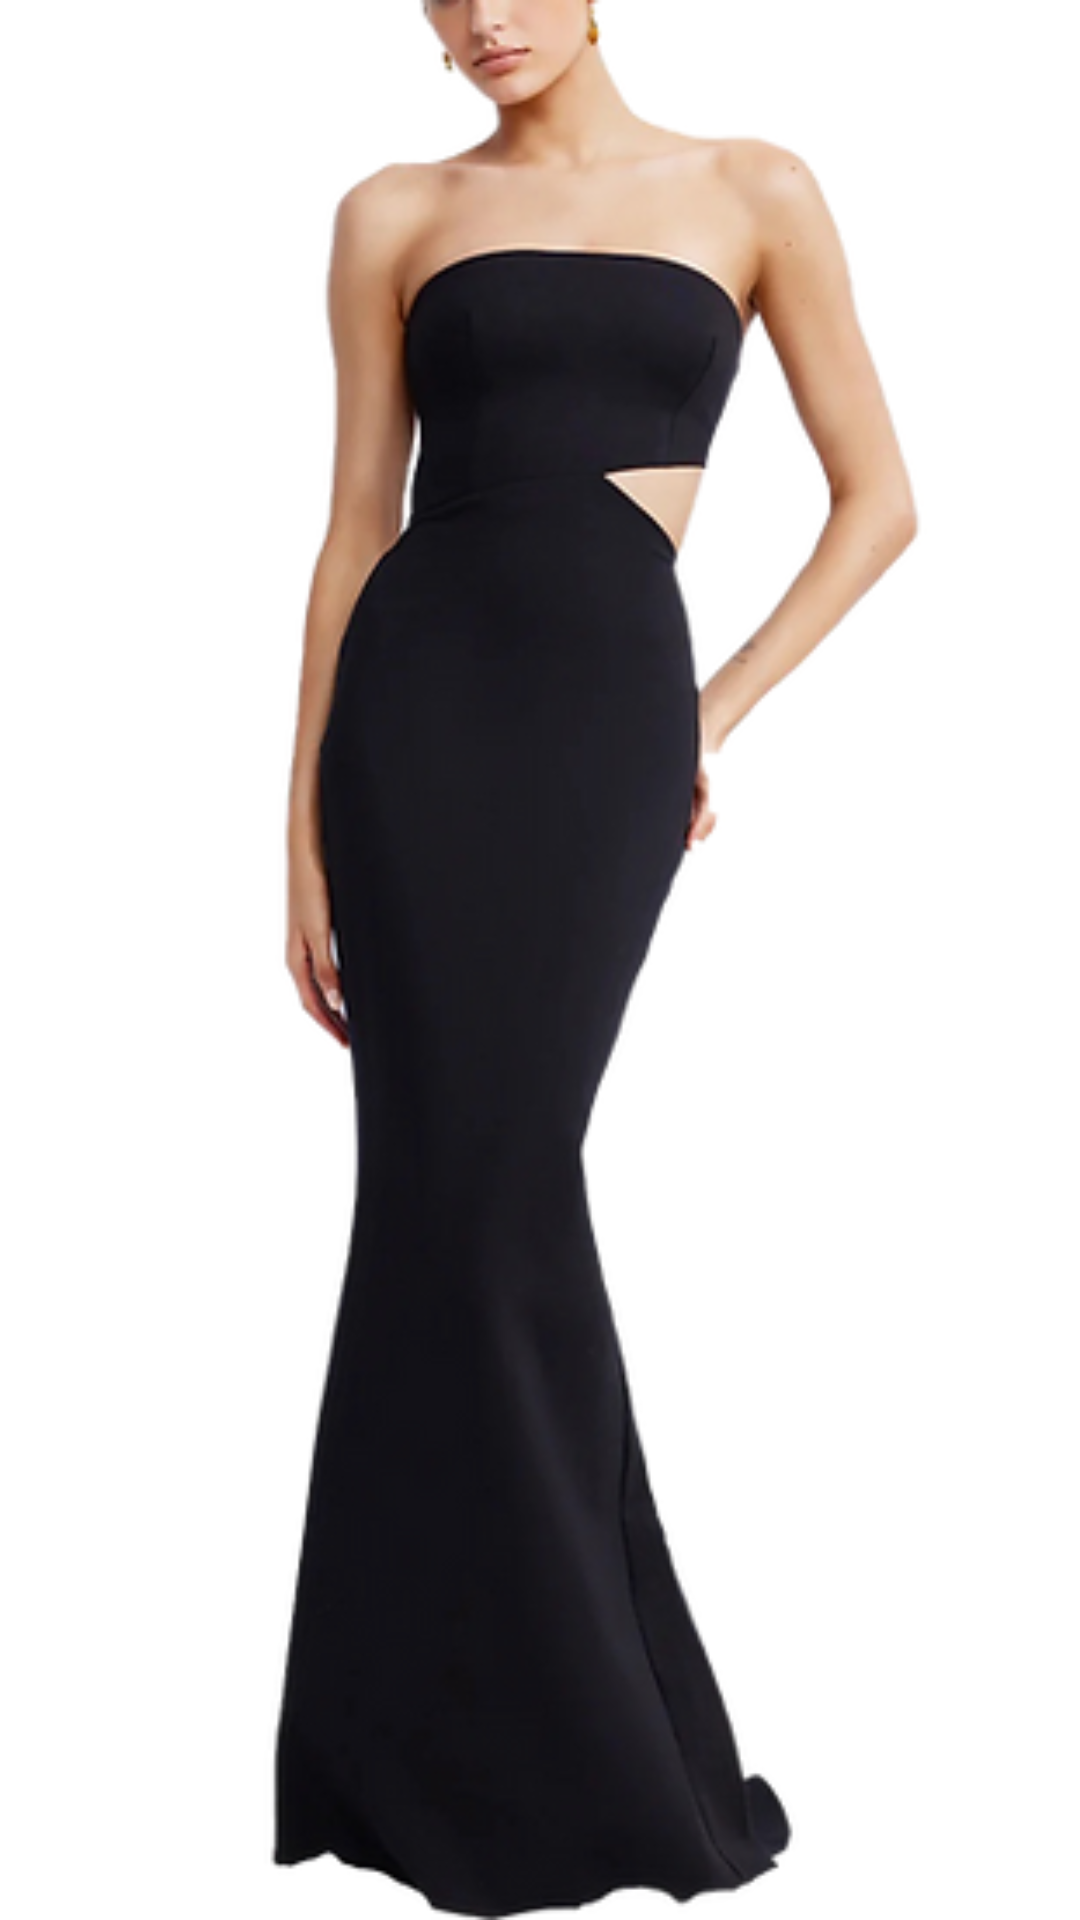 Lexi Serafina Cut-Out Bustier Dress in Black